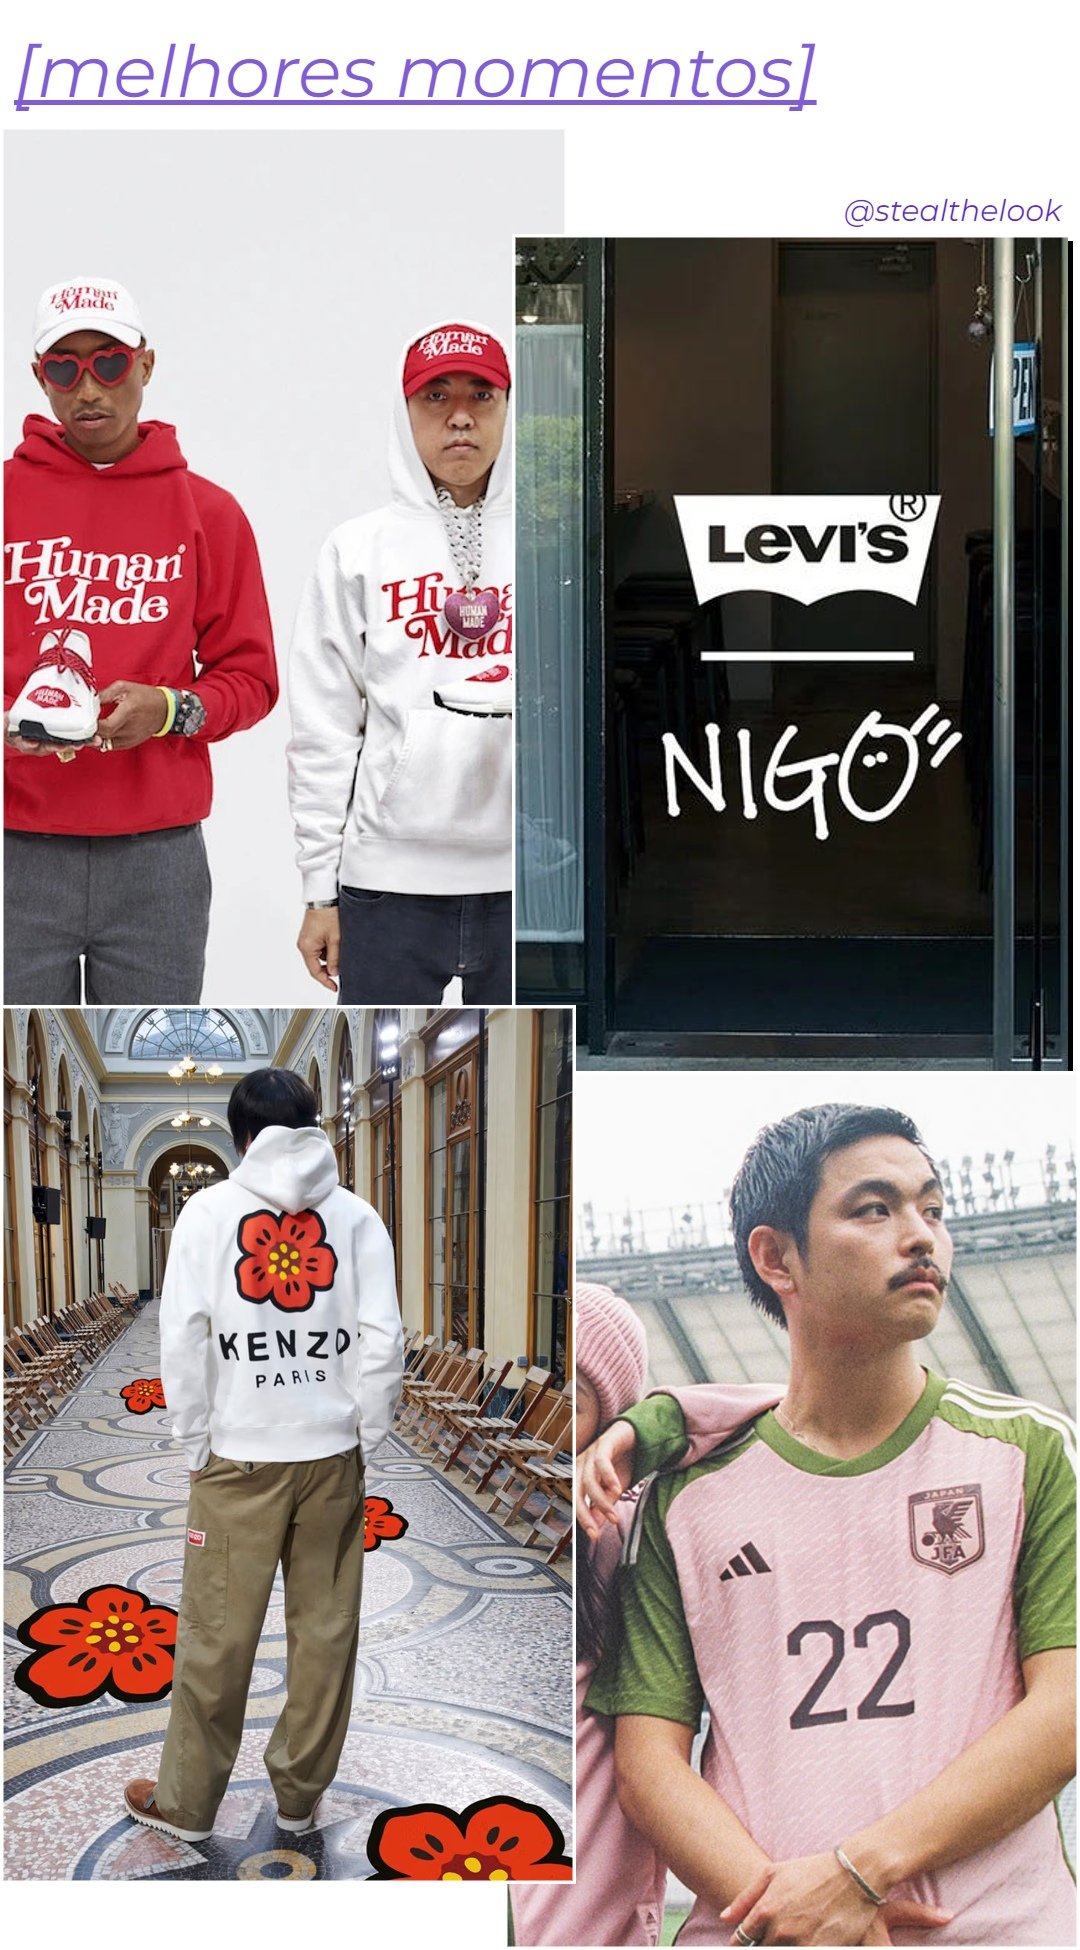 Nigo - roupas diversas - asiáticos na moda - inverno - colagem de imagens - https://stealthelook.com.br